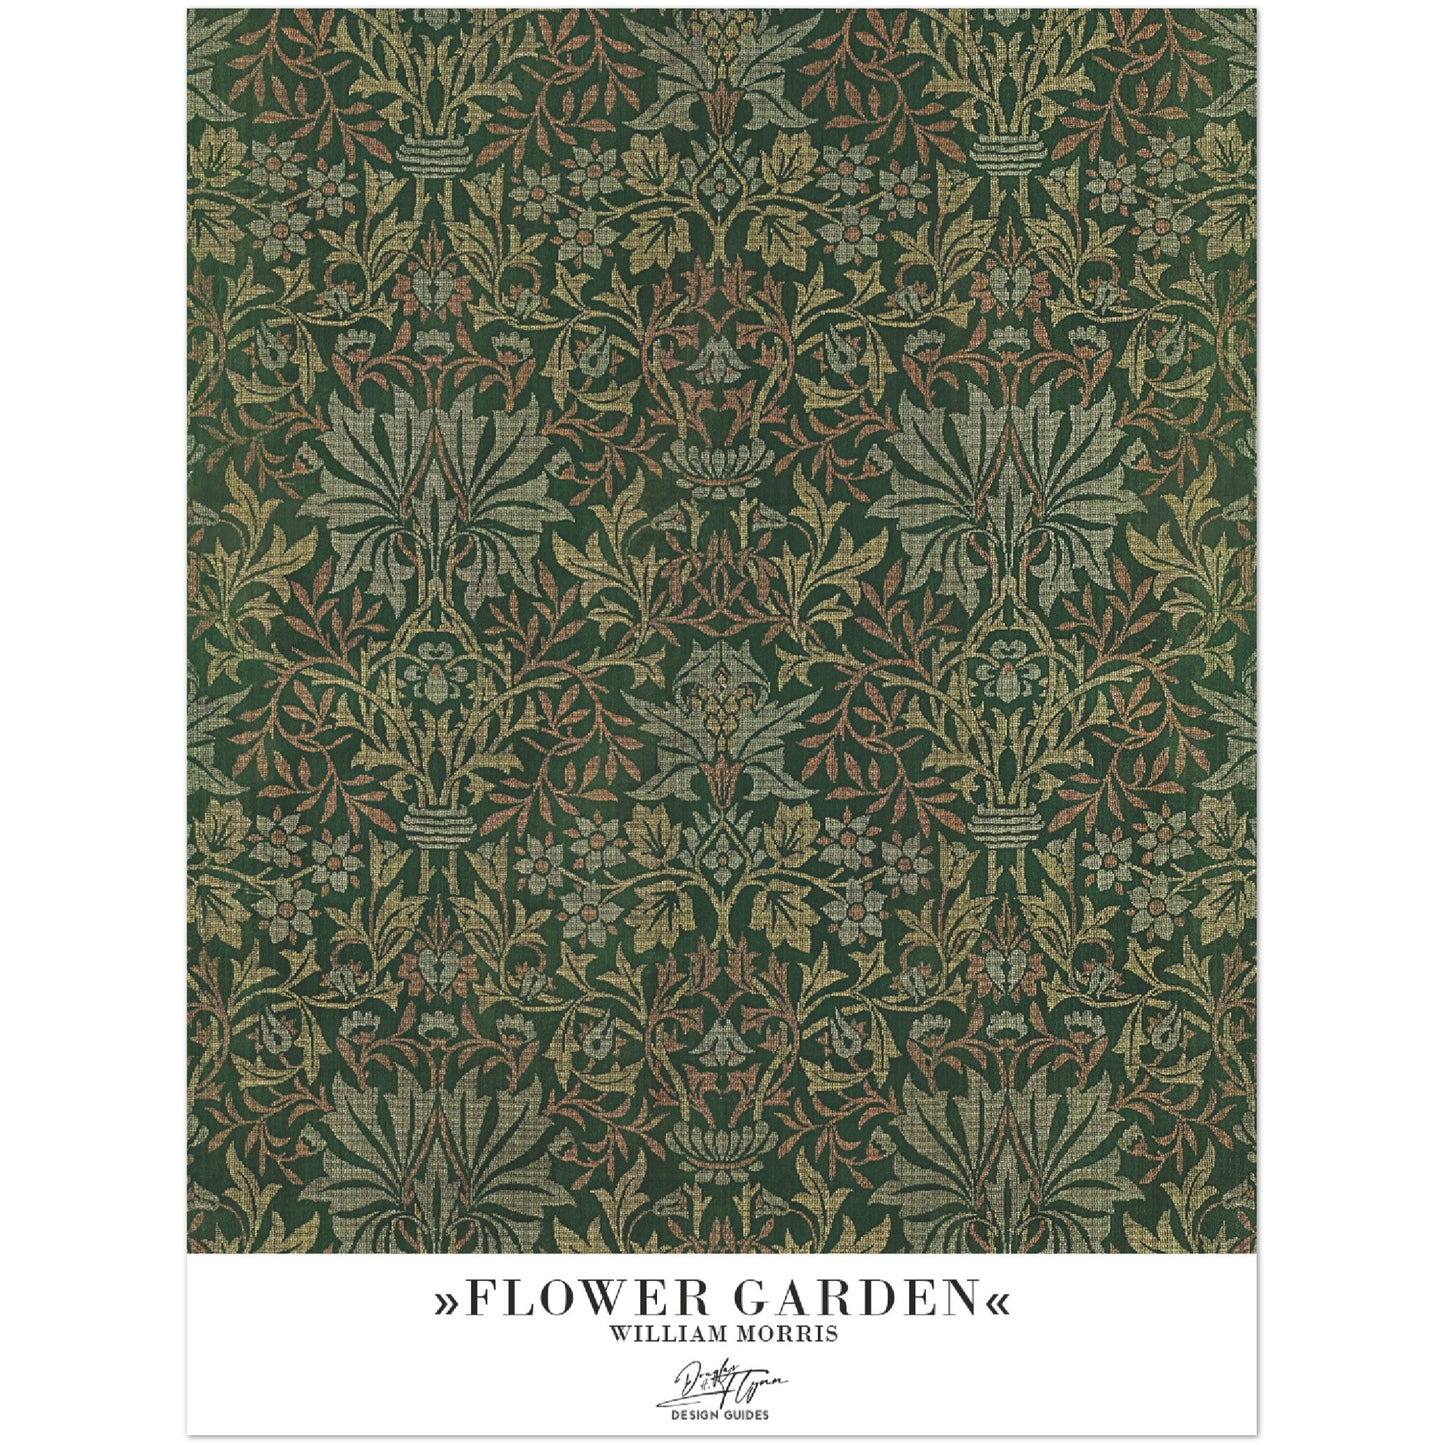 »Flower Garden«